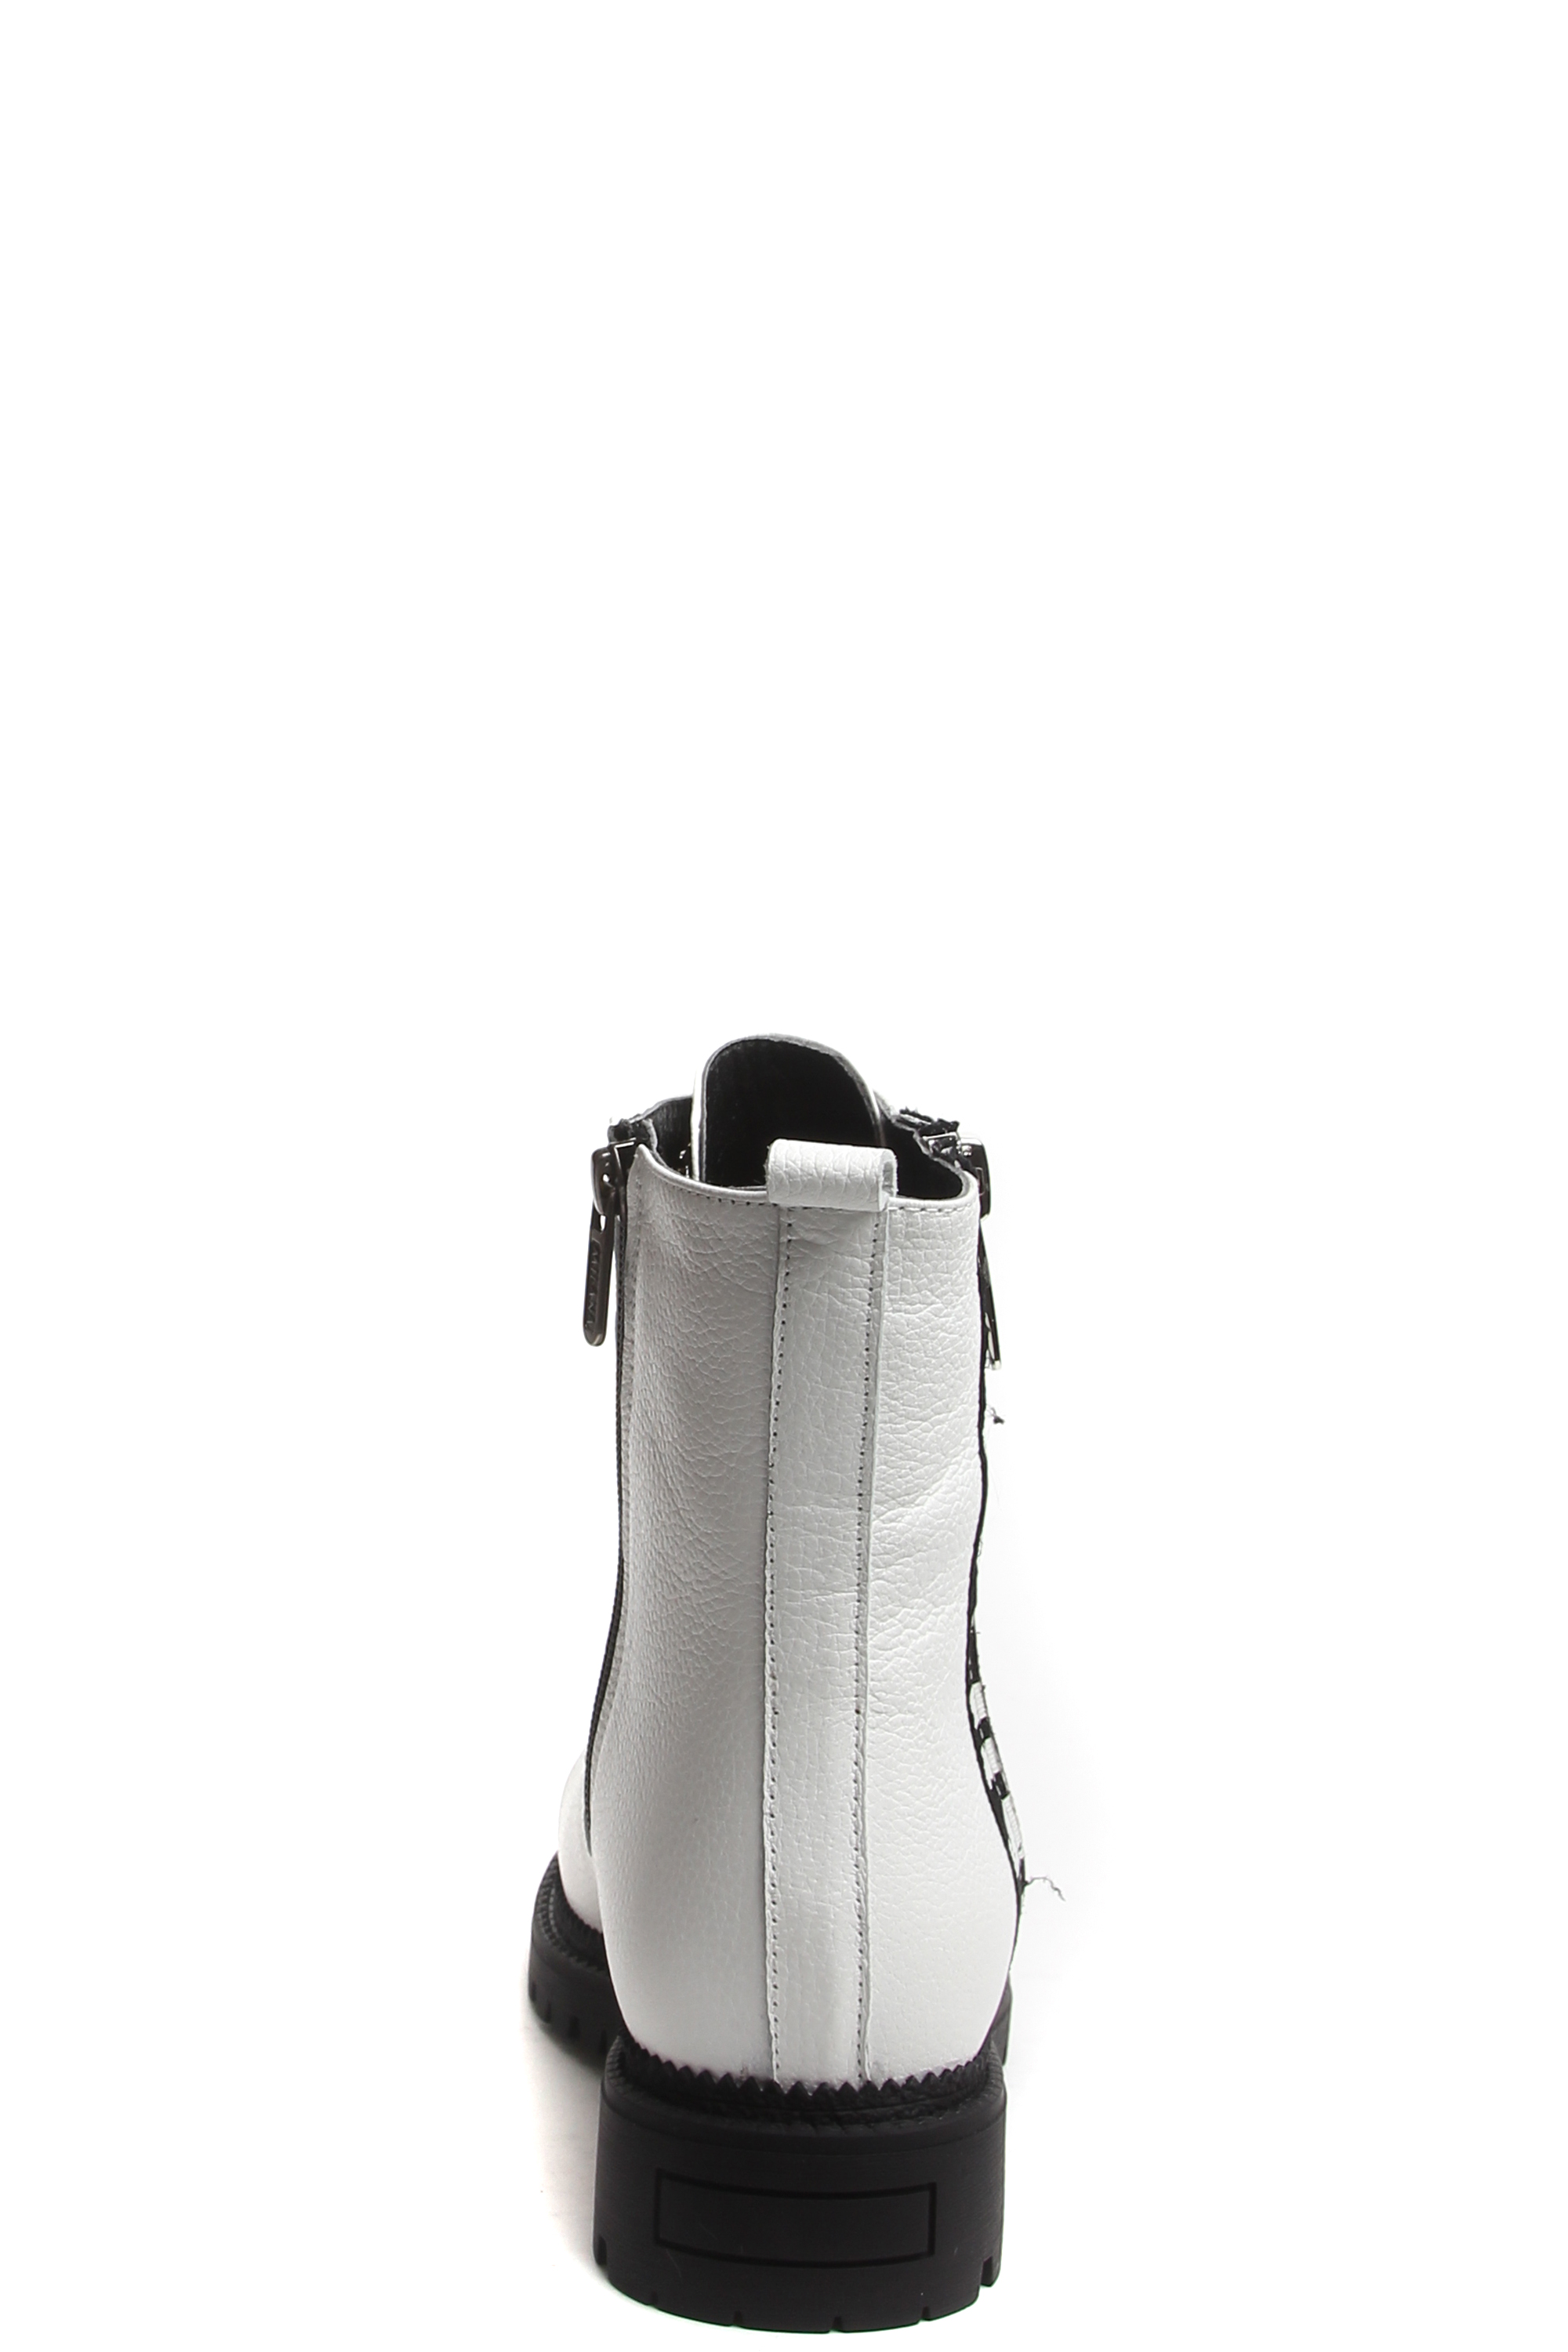 Ботинки MILANA 182377-1-130F белый - купить 12990